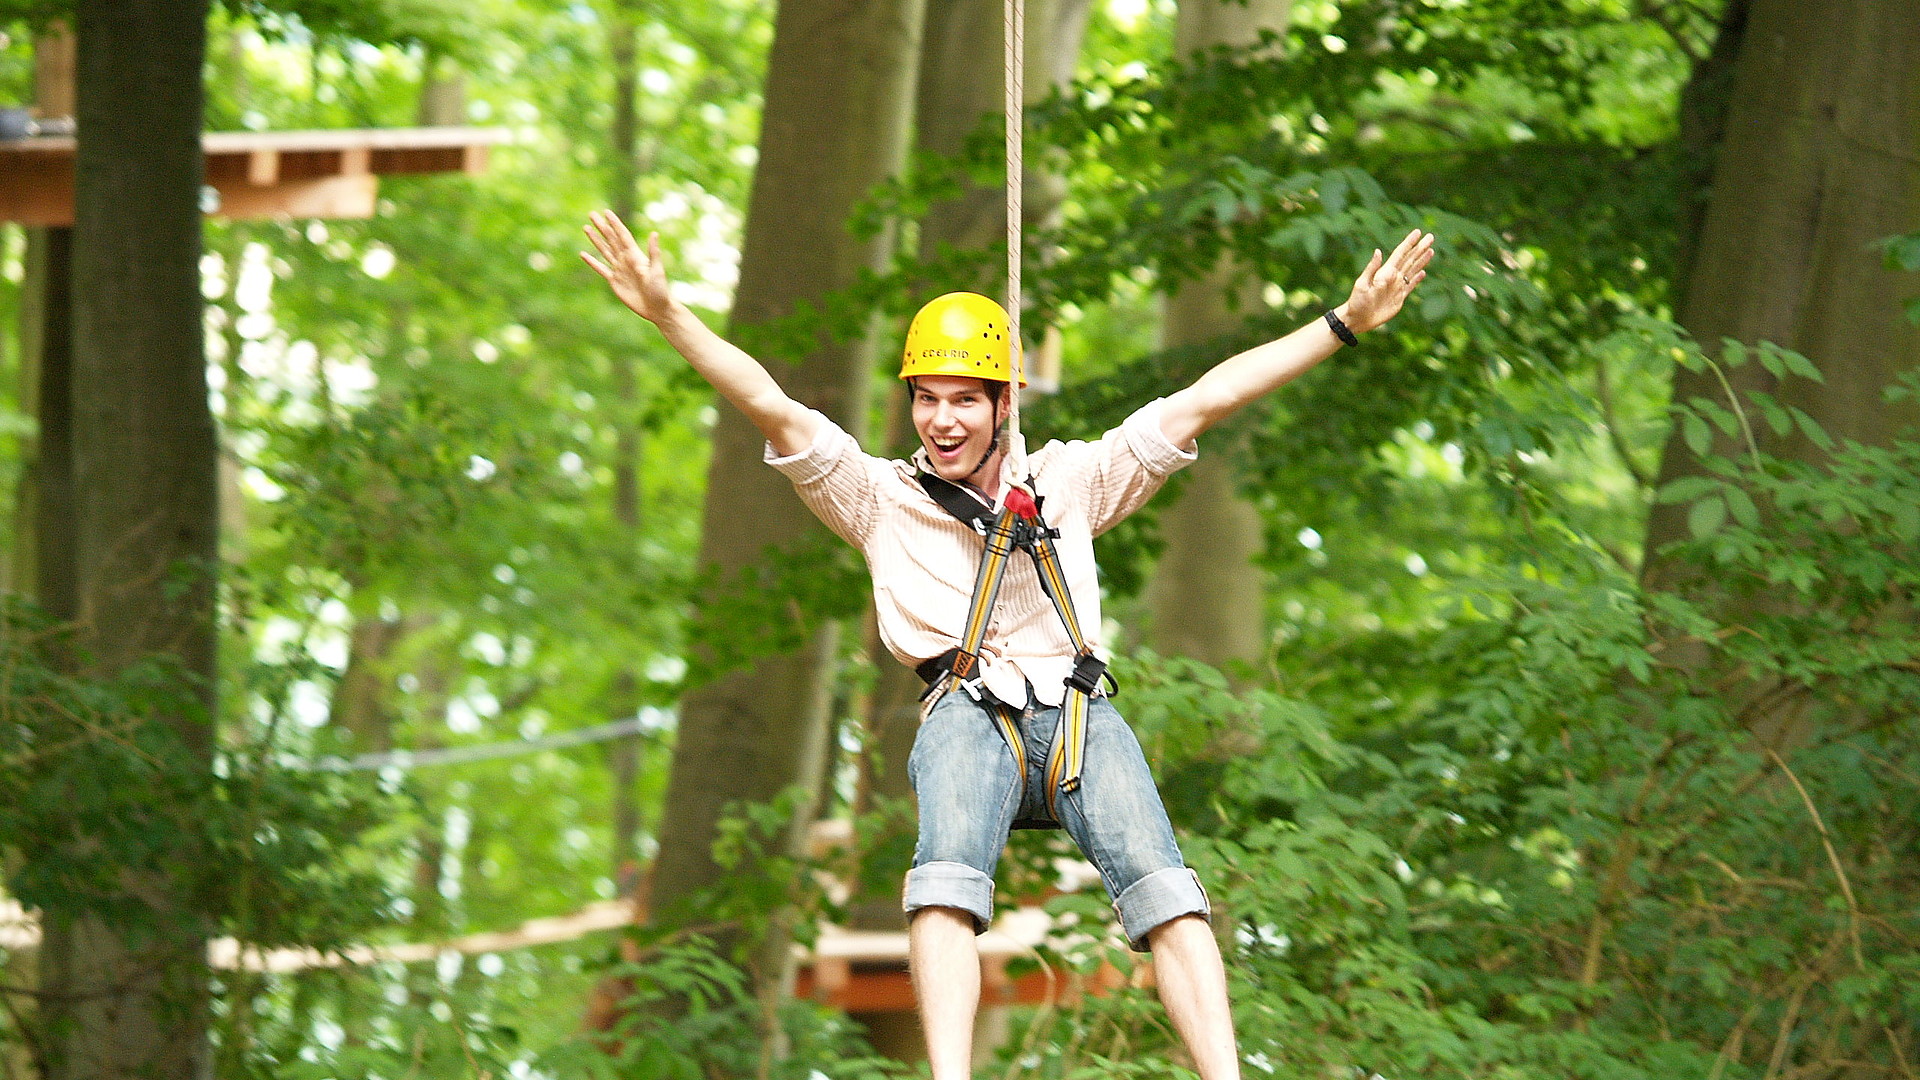 Junger Mann, der lacht und freudig die Arme in die Luft streckt, im Kletterwald auf einer Seilrutsche